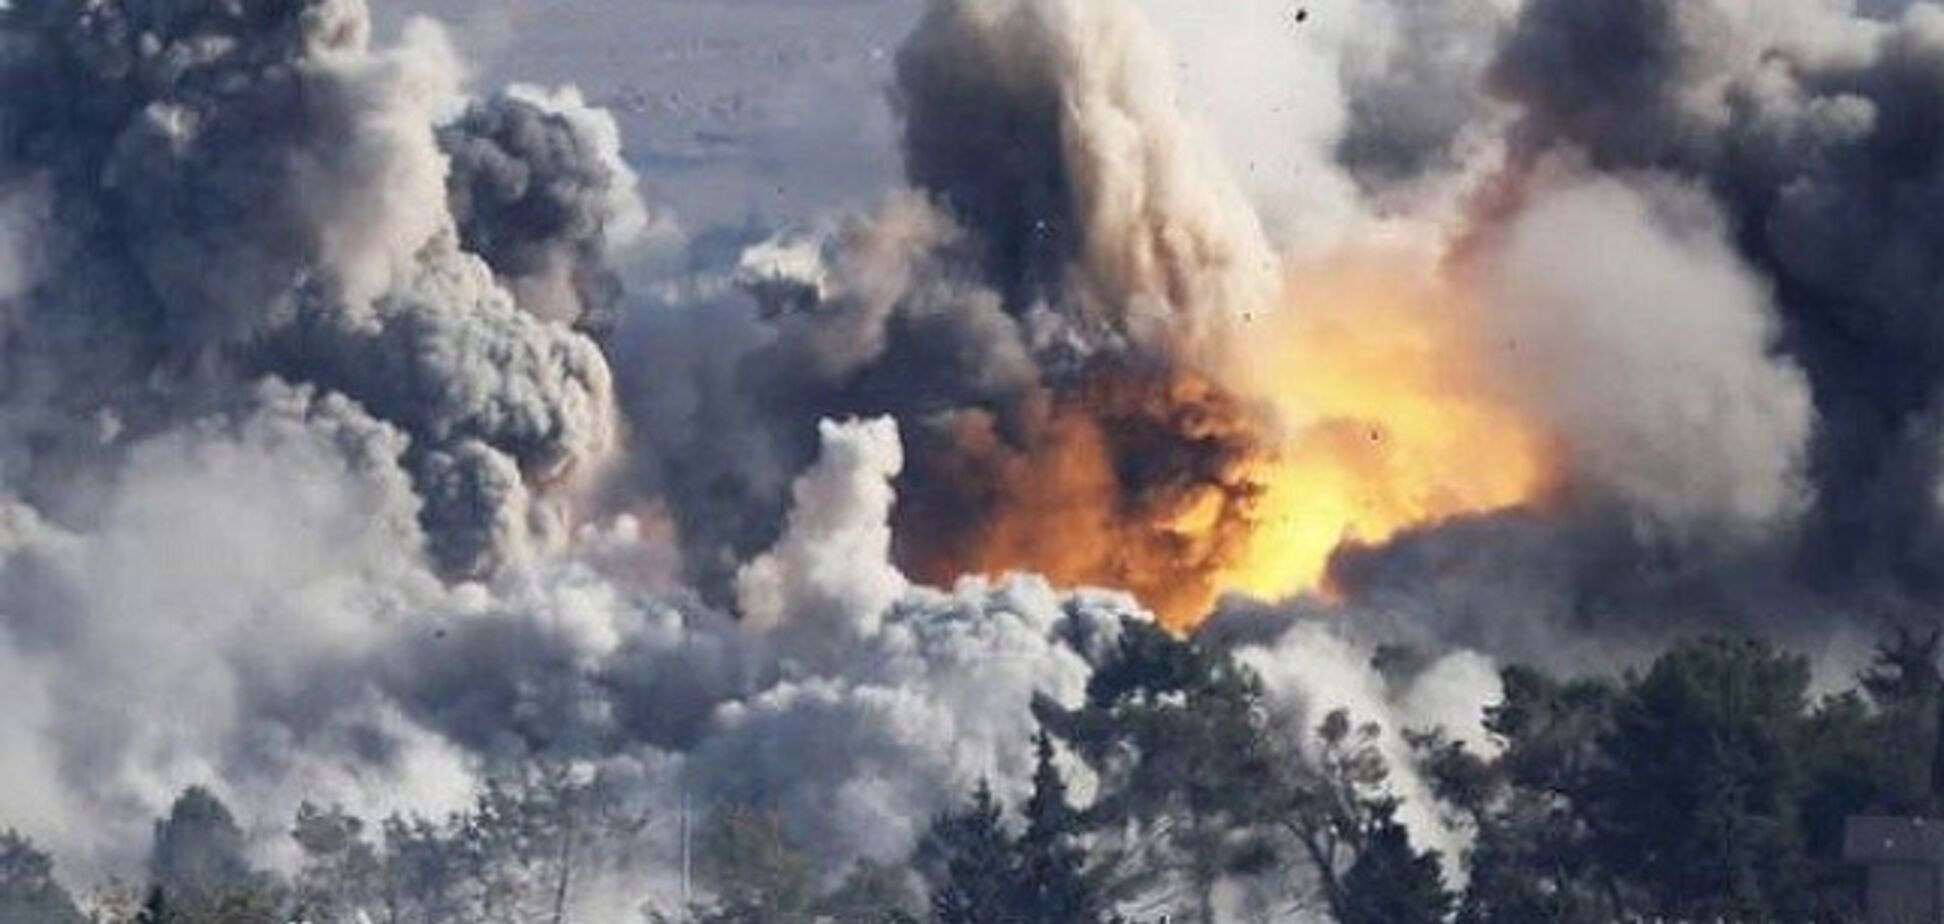 Хибна тривога: військові прояснили новий удар по Сирії